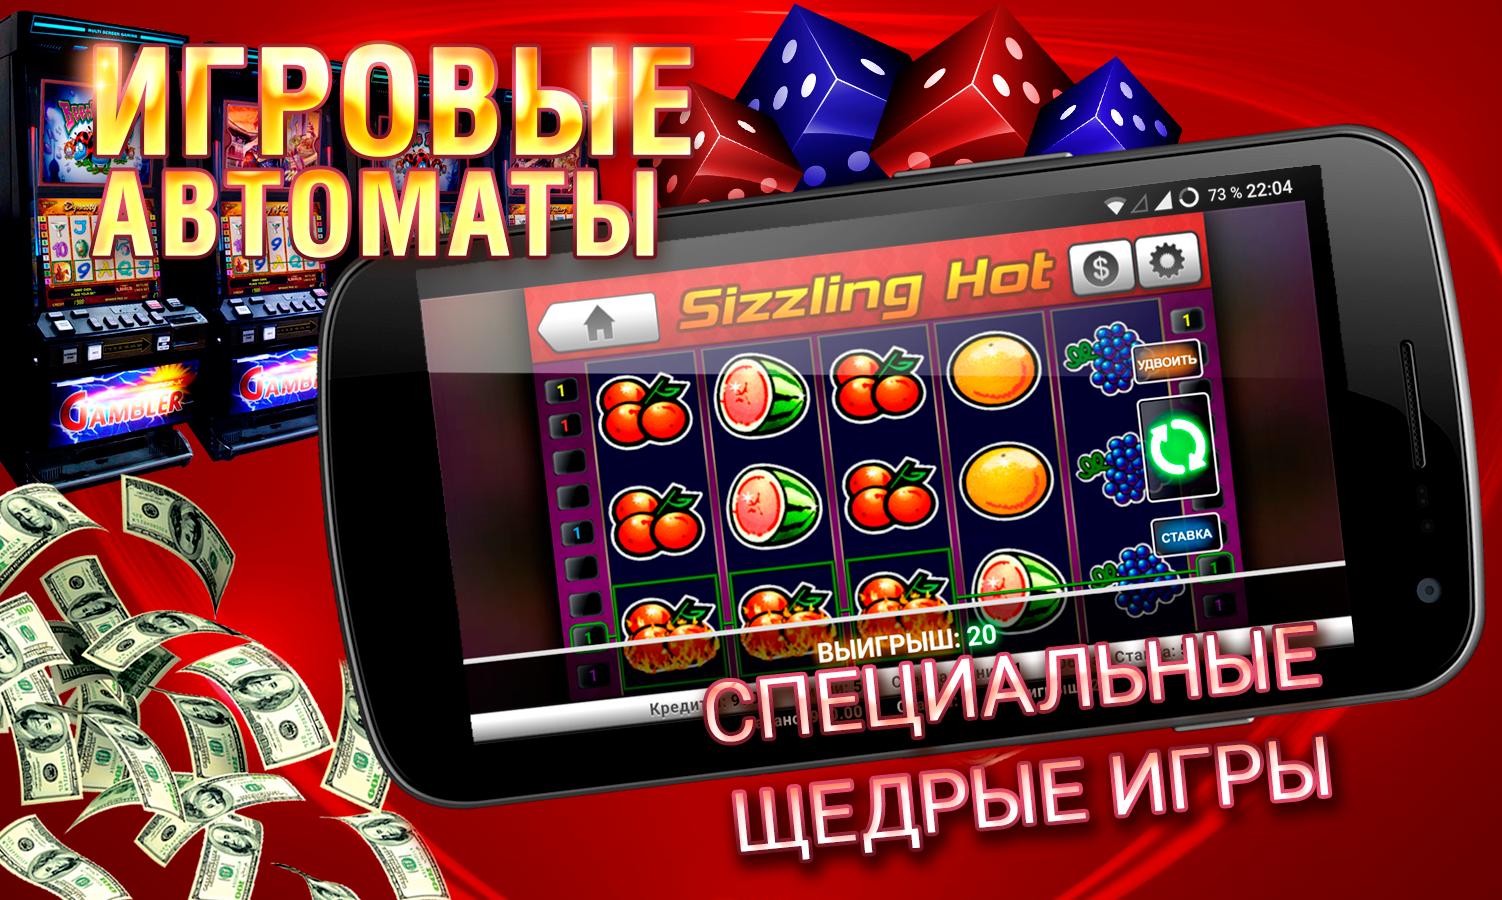 Игровые автоматы на деньги отзывы slotodengi online casino games designed to